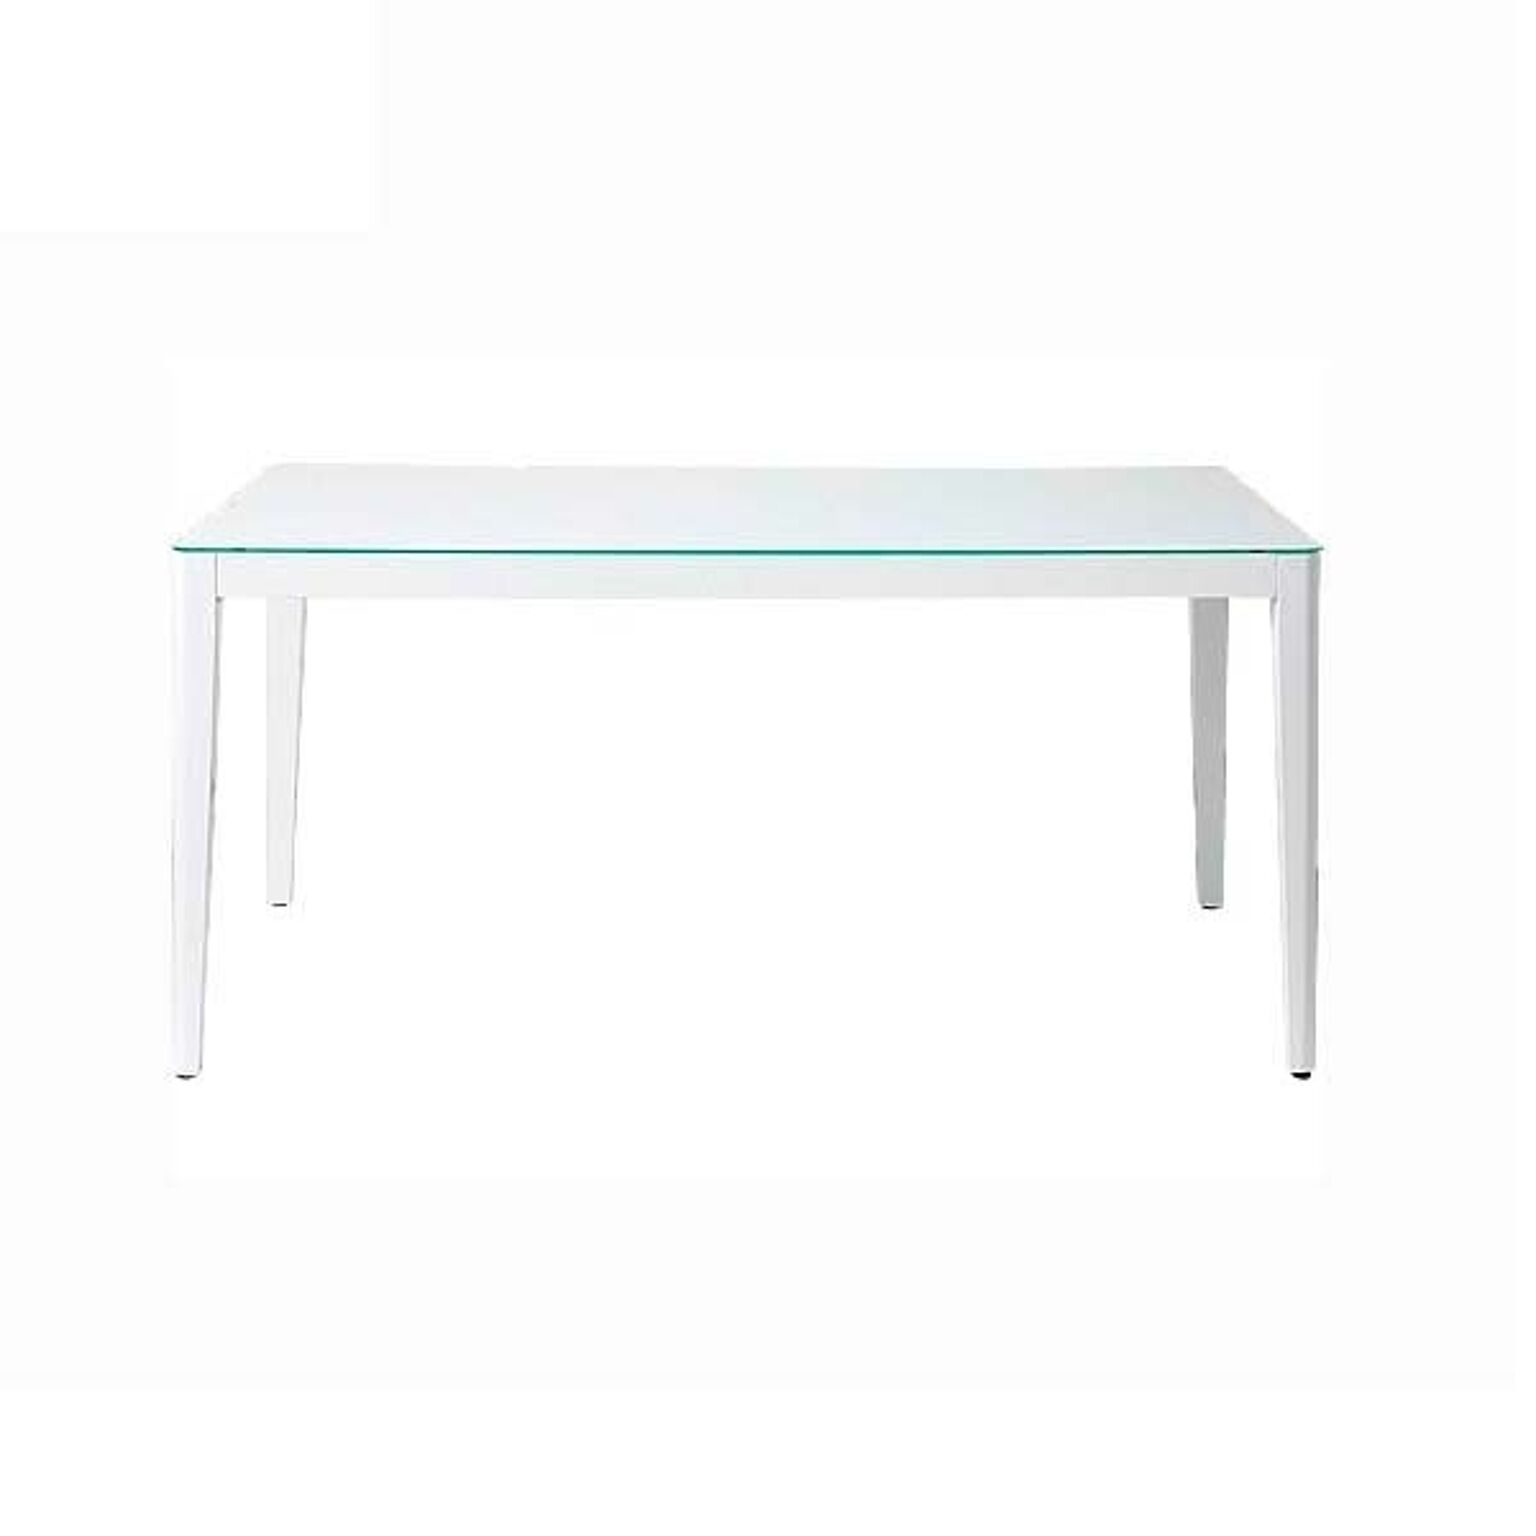 ダイニングテーブル 幅135 高さ72 ホワイト色 ガラス天板 脚部木製 長方形テーブル 飛散防止ガラス ナチュラル ウィズ GDT7671 北欧テイスト